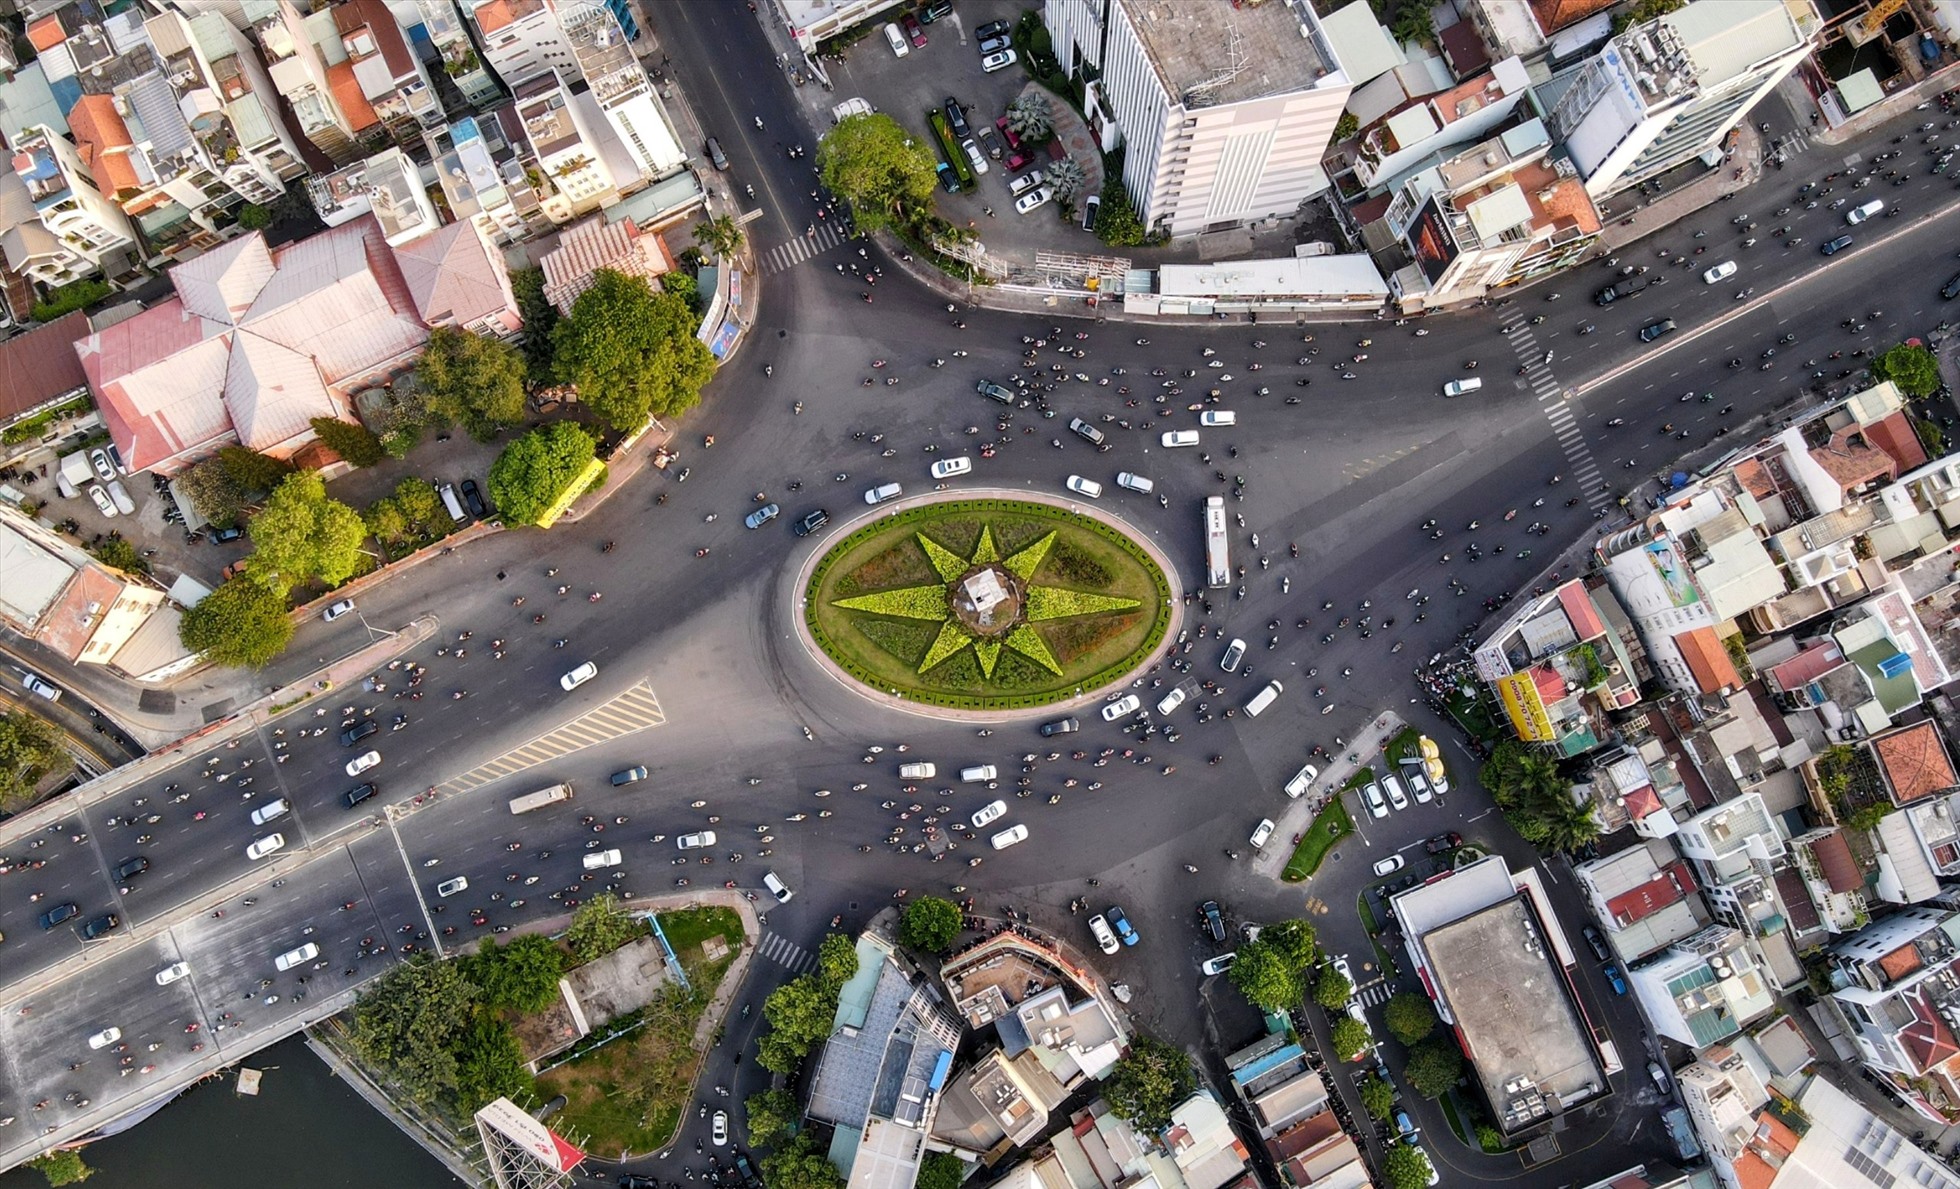 Vòng xoay Điện Biên Phủ - Nguyễn Bỉnh Khiêm được lập khoảng 20 năm trước, đường kính 60 m, có bố trí cây xanh. Giữa vòng xoay có tháp đồng hồ 4 mặt, cao khoảng 16 m, được xem là biểu tượng ở nút giao.